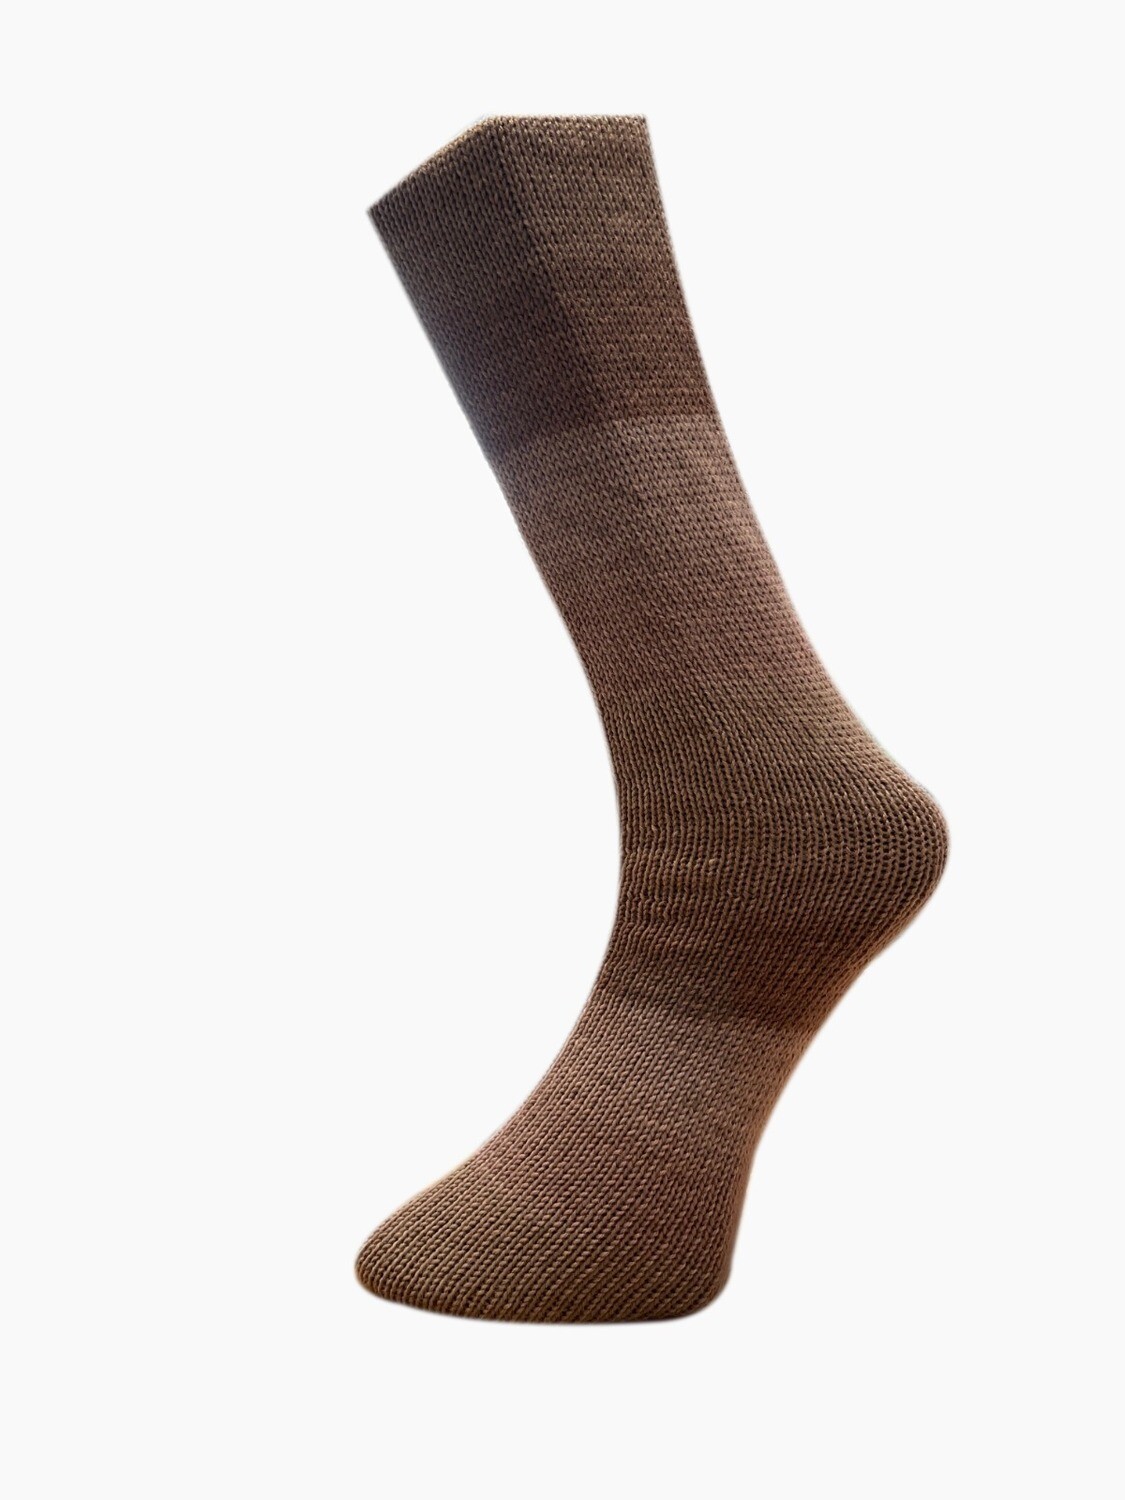 Ferner Lungauer Sockenwolle 4-fach mit Cashmere (100g), Farbe: 815